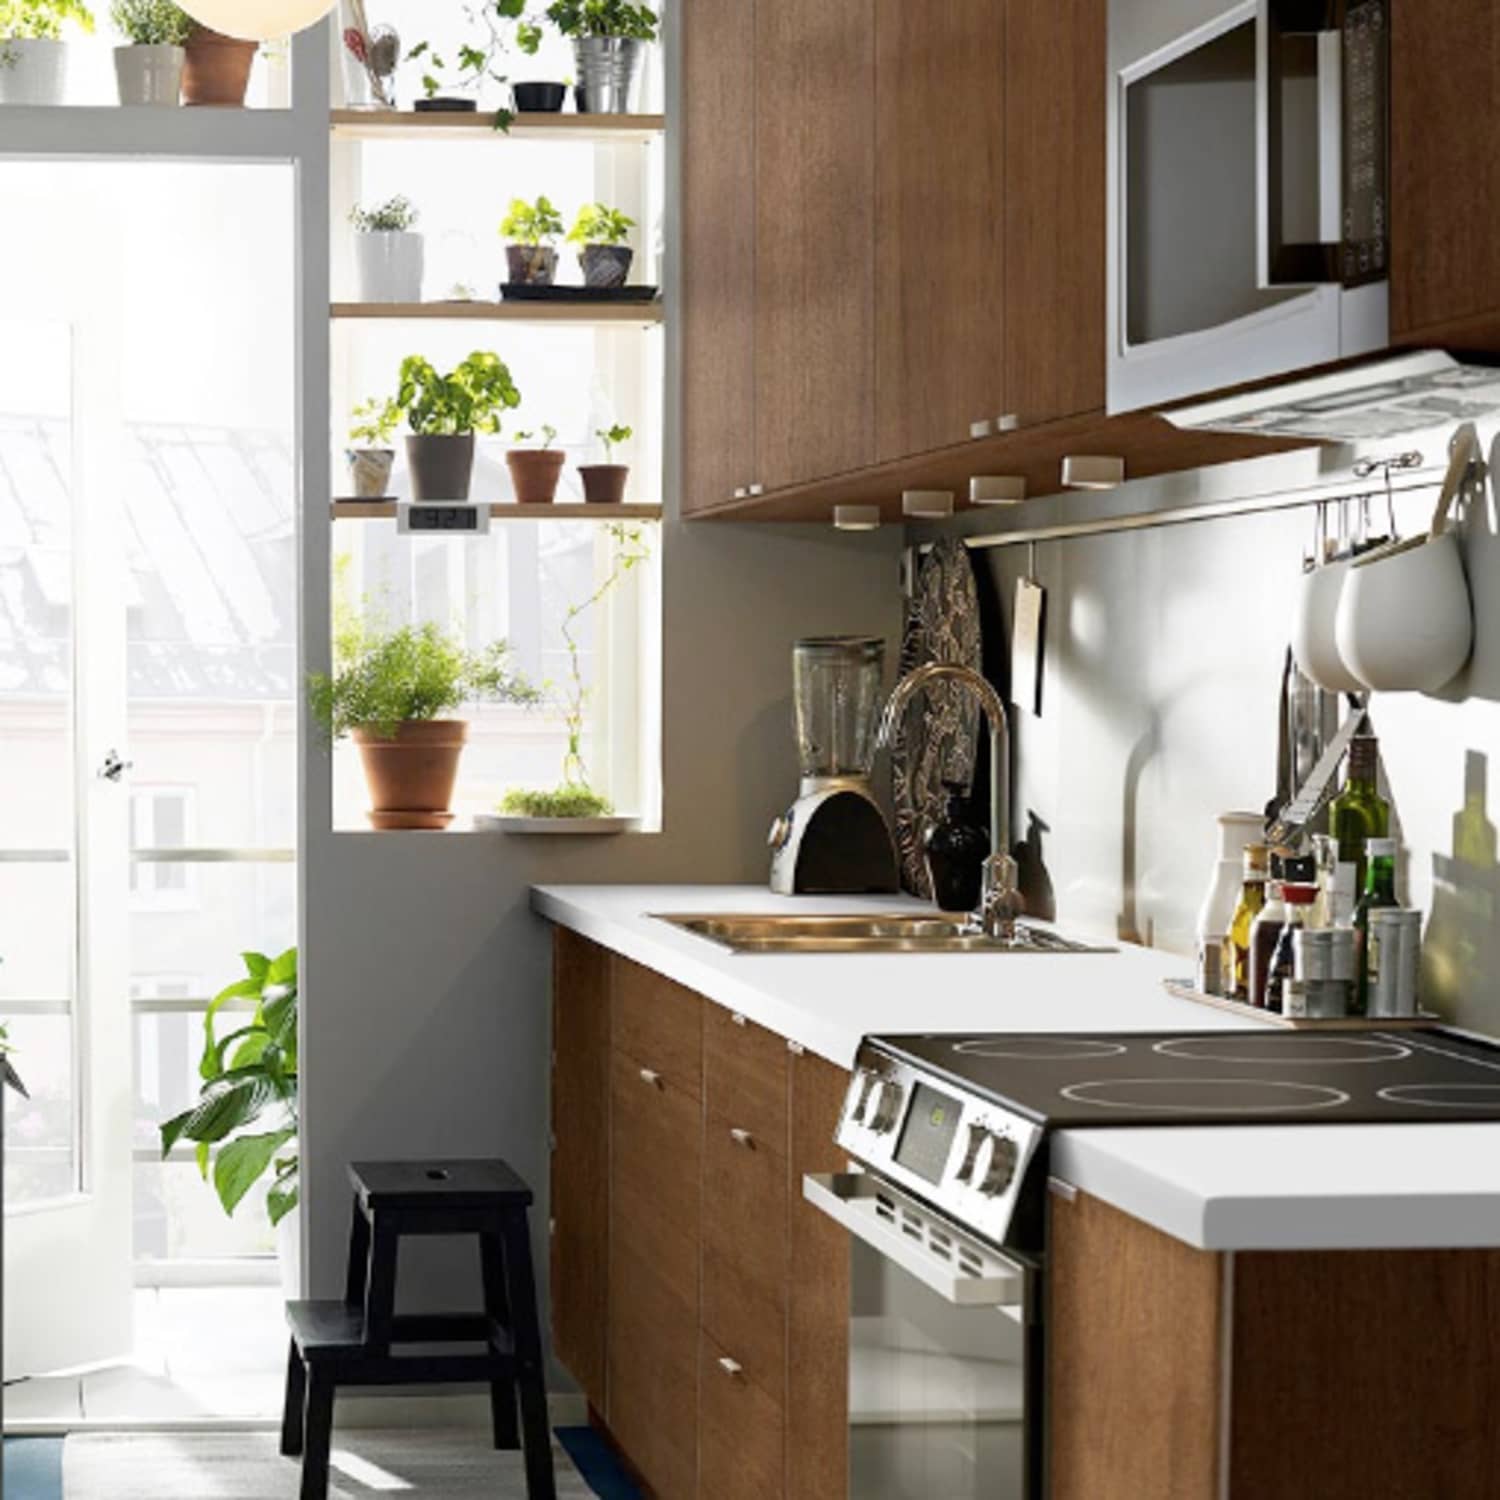 Compact Kitchen Appliances: 12 Smart Sources